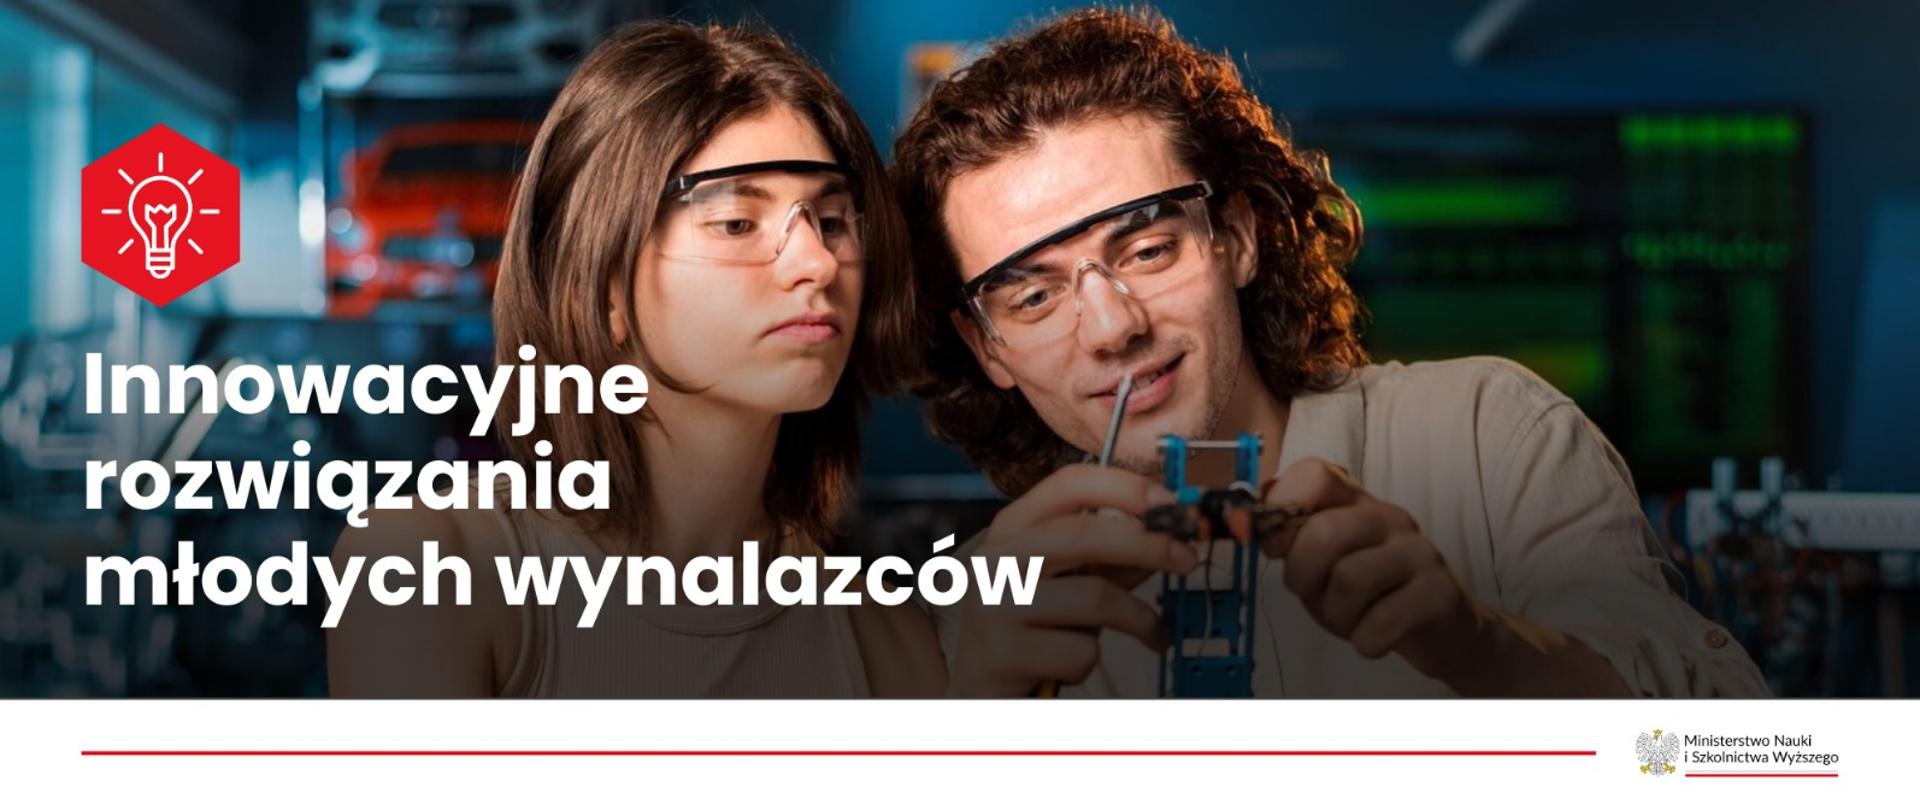 Dwójka młodych osób z okularami na oczach z zaciekawieniem zajmują się konstrukcją jakiegoś przedmiotu. Po lewej stronie napis Innowacyjne rozwiązania młodych wynalazców 